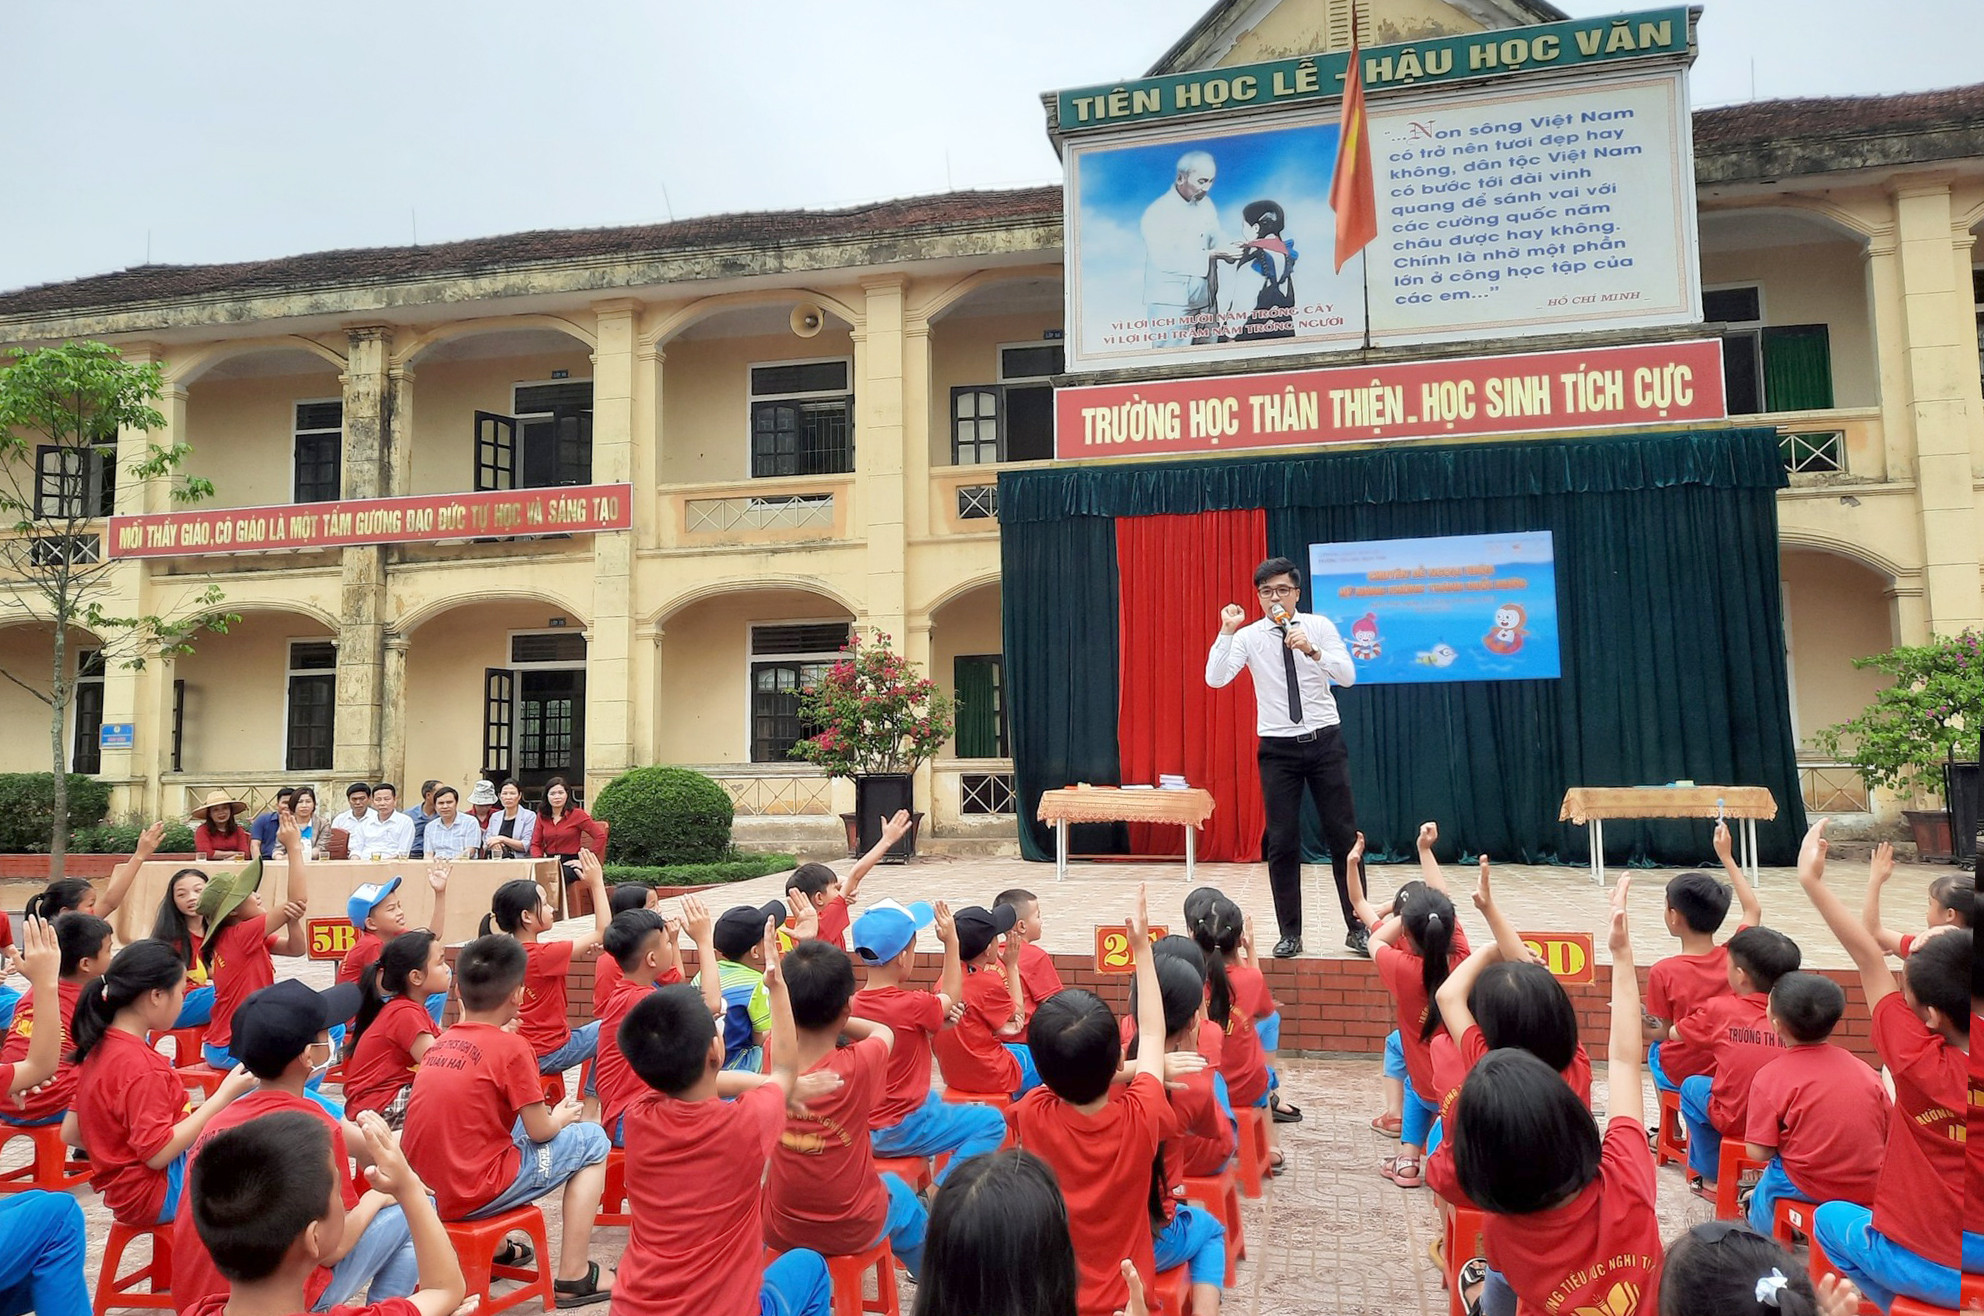 bna_Một buổi giáo dục kỹ năng sống do các trung tâm phối hợp với các trường học trên địa bàn tỉnh Nghệ An.jpg